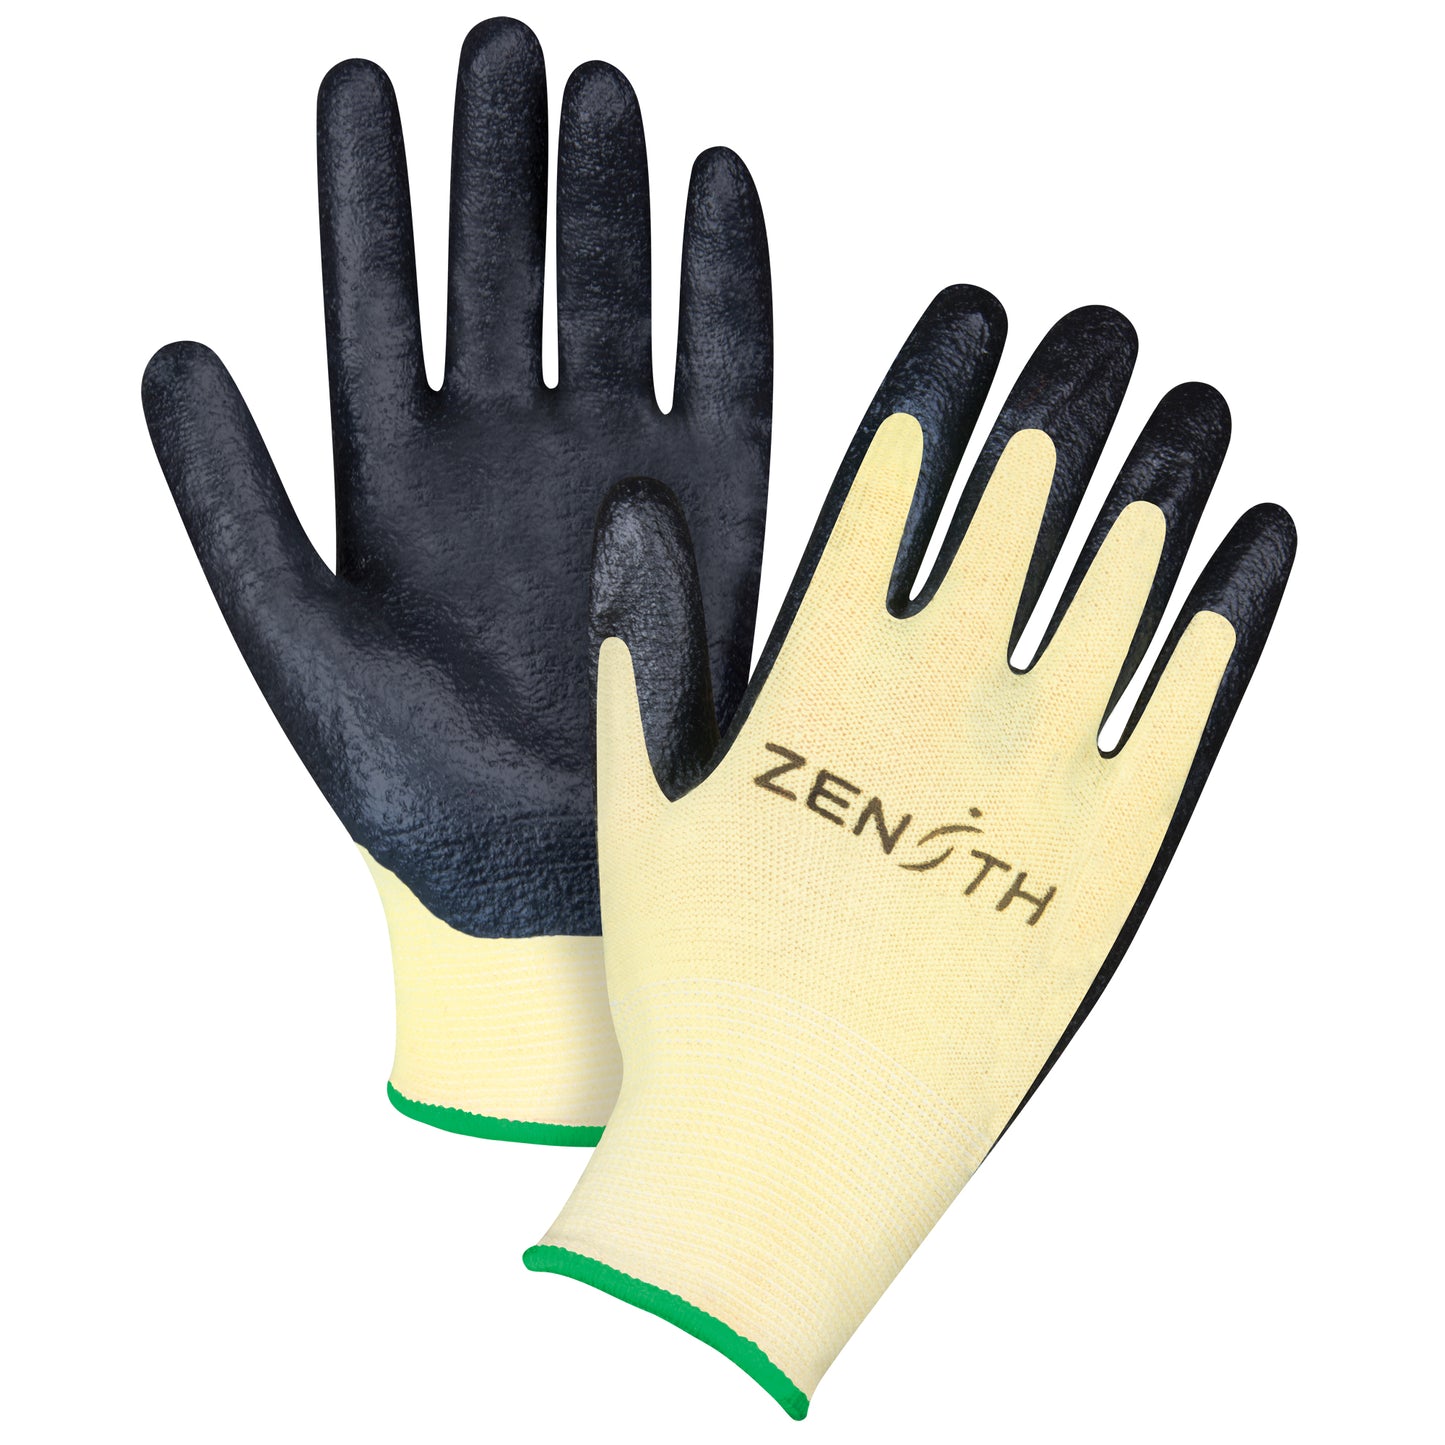 Coated Gloves, Foam Nitrile Coated, Aramid Shell